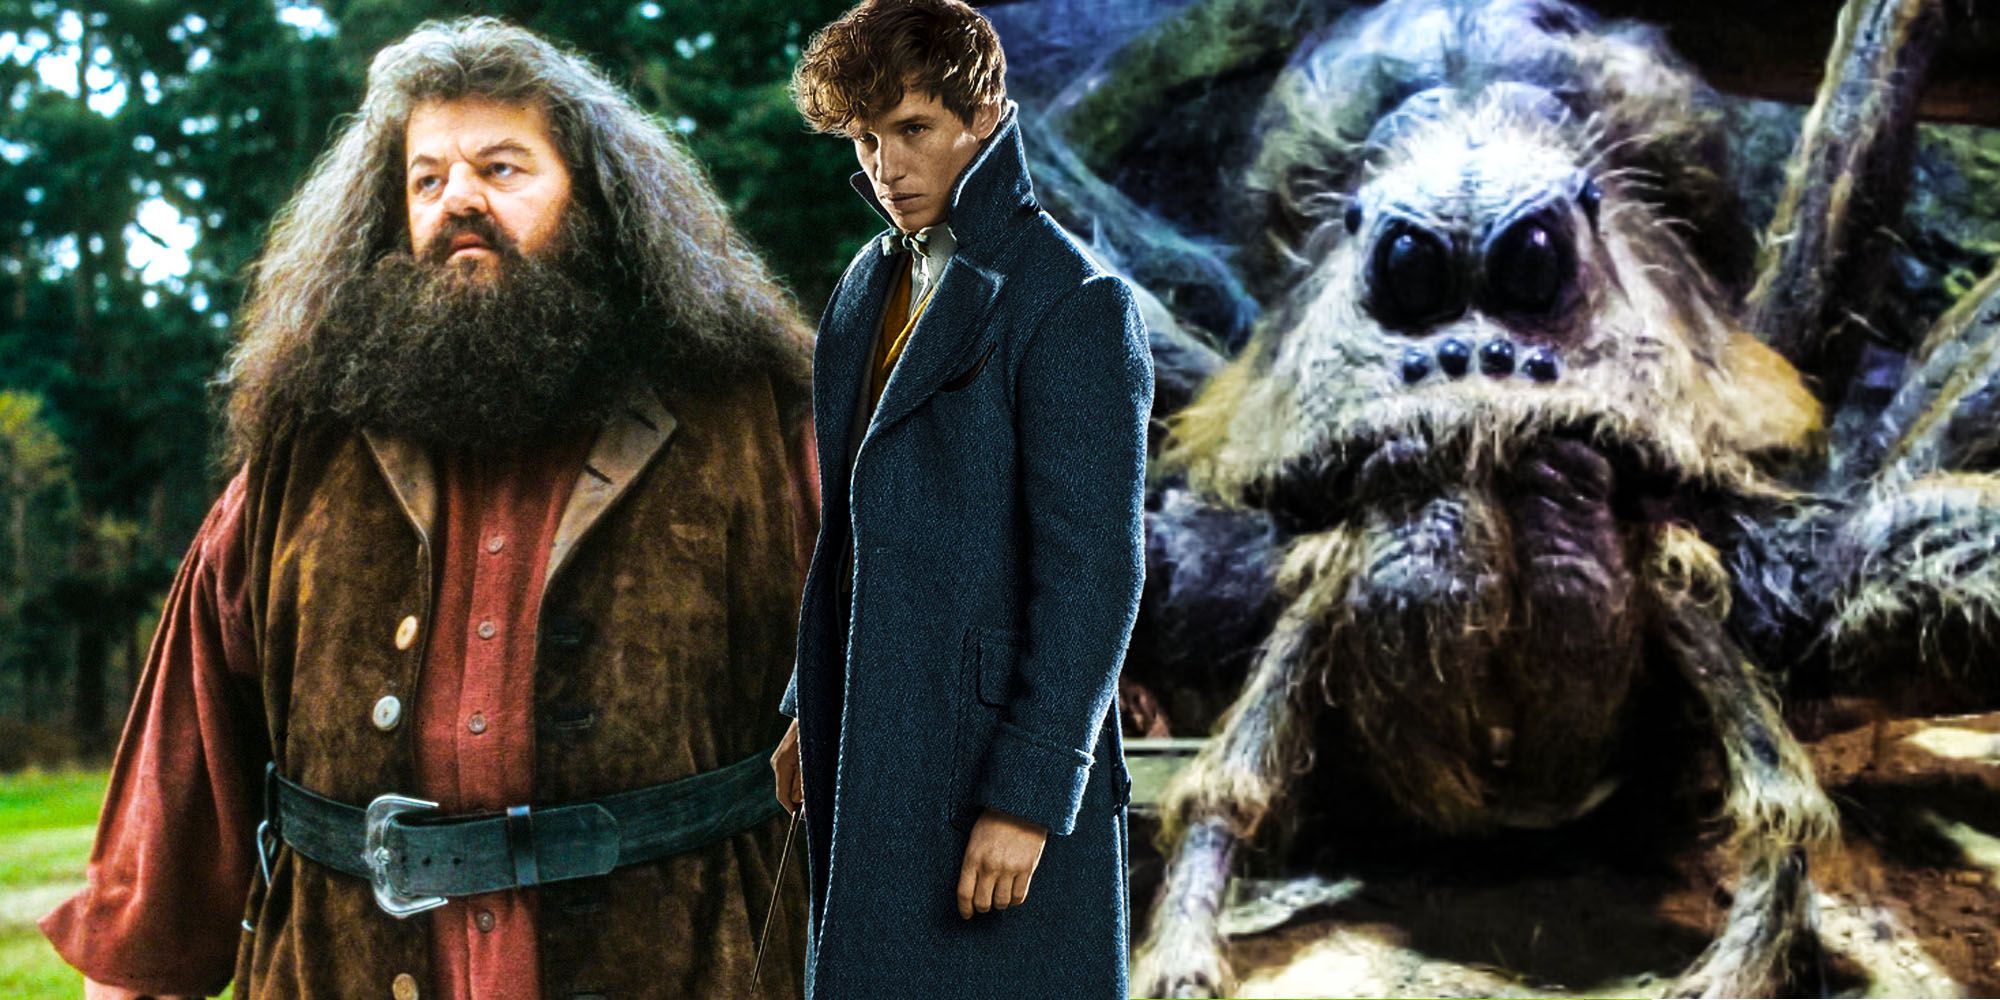 Animales fantásticos explica cómo Hagrid consiguió Aragog – Teoría de Harry Potter explicada